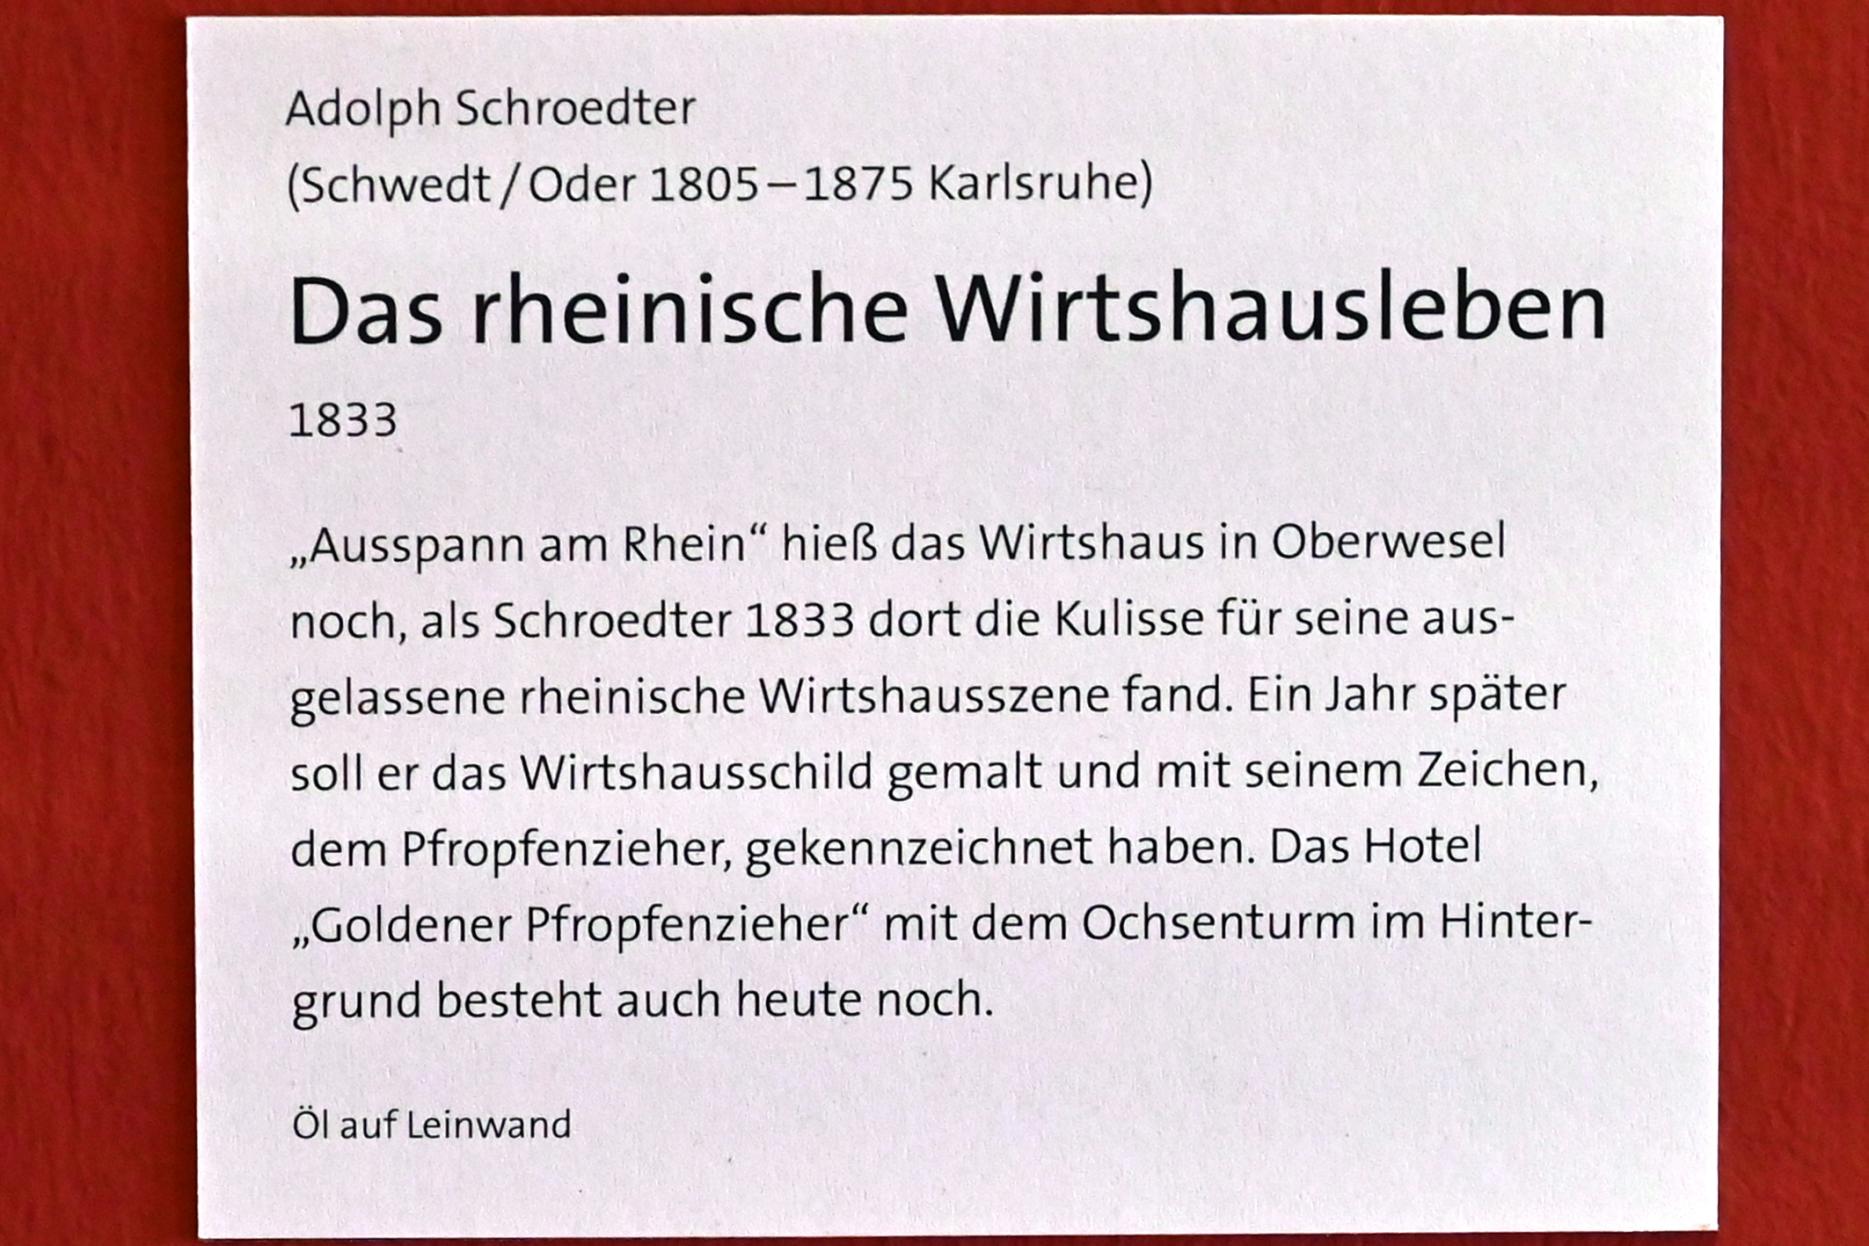 Adolph Schroedter (1833), Das rheinische Wirtshausleben, Bonn, Rheinisches Landesmuseum, 1833